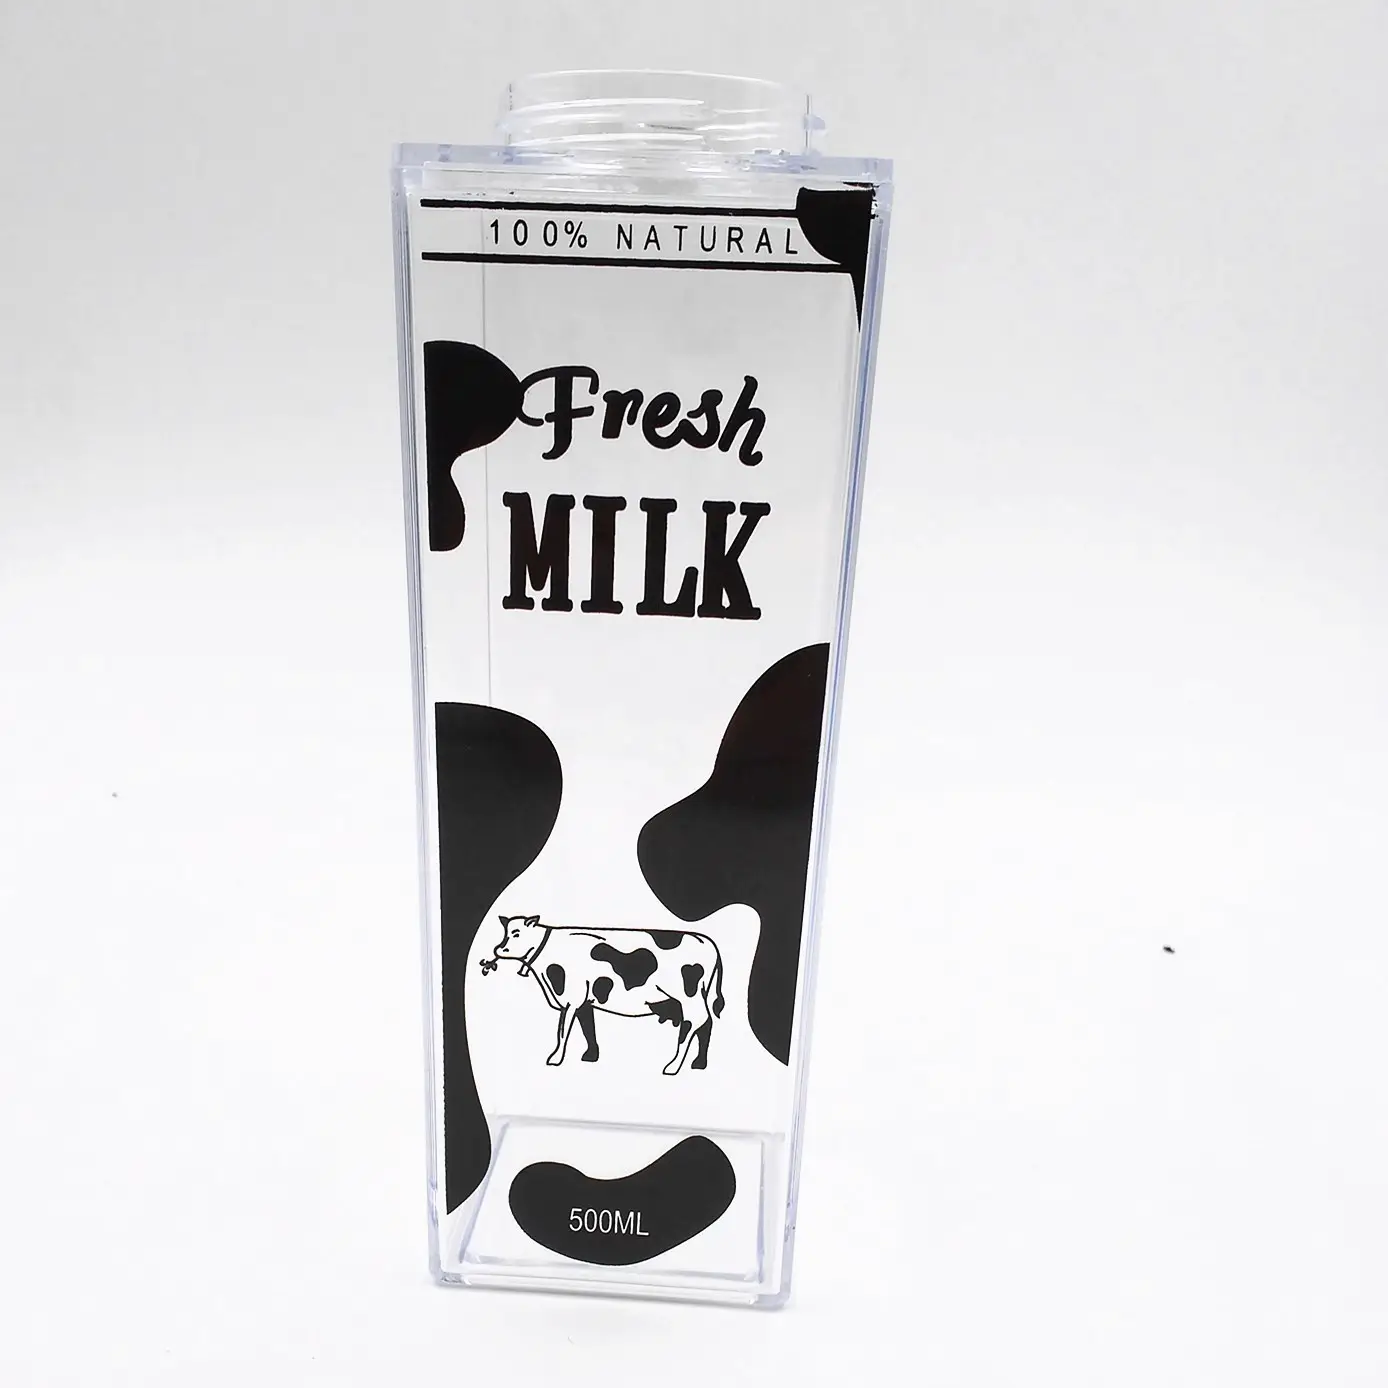 Hot Product Herbruikbare Clear Bpa Gratis Plastic Melk Karton Water Fles Voor Kinderen